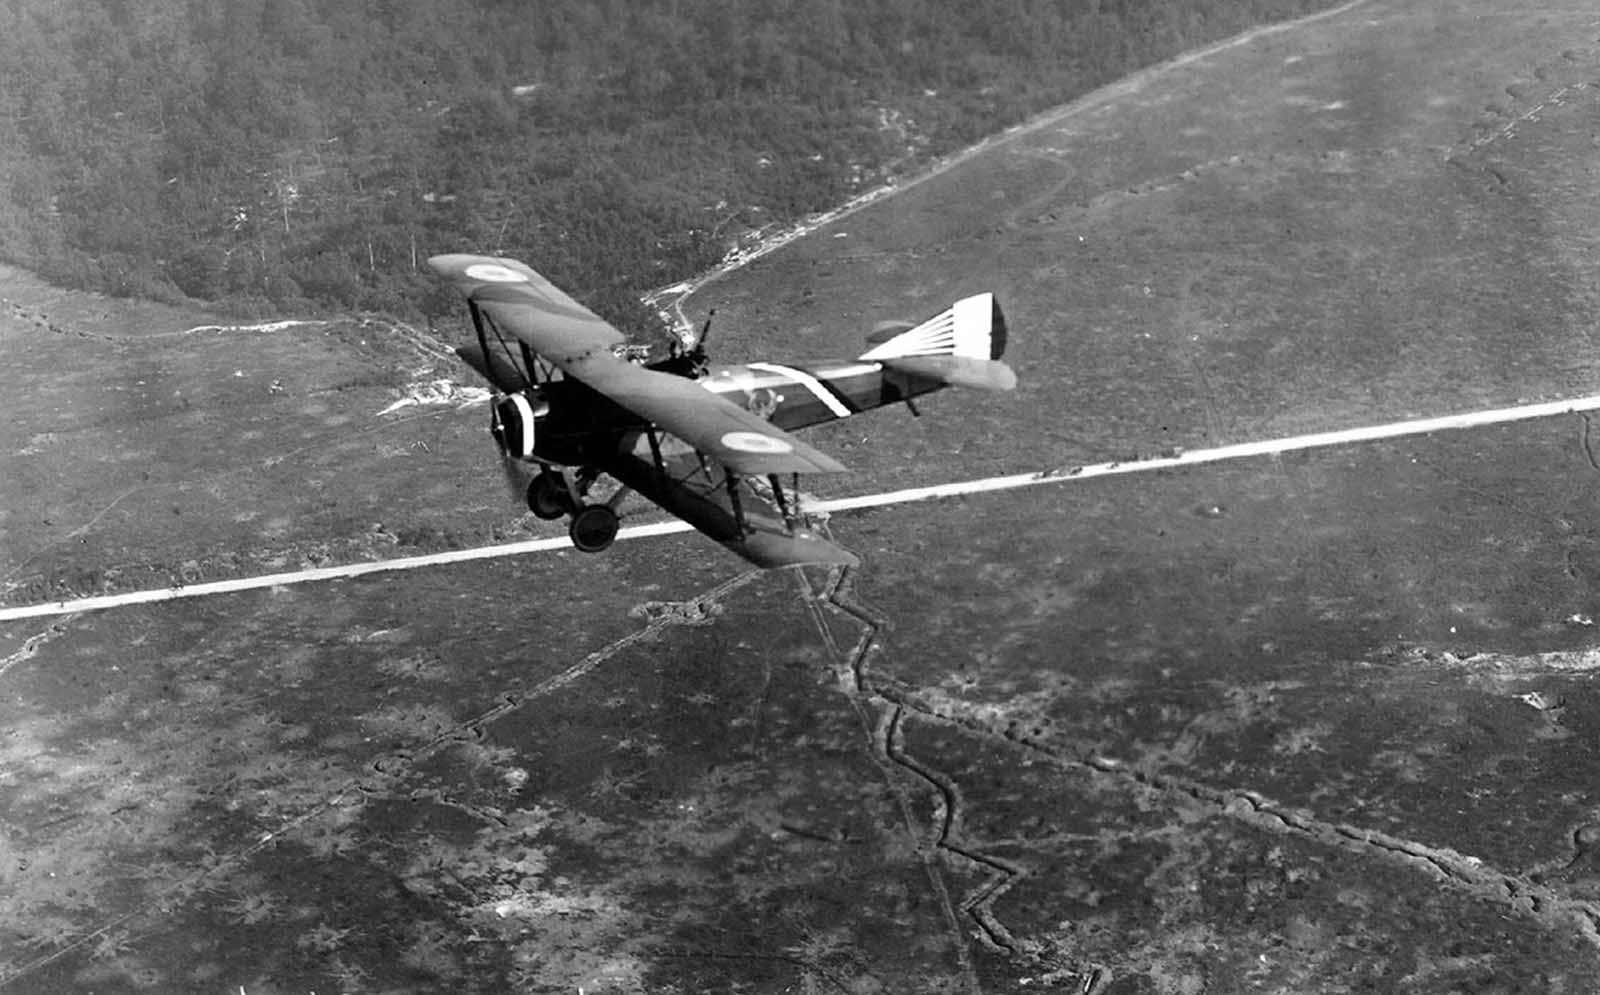 Les combats aériens de la Première Guerre Mondiale, 1914-1918